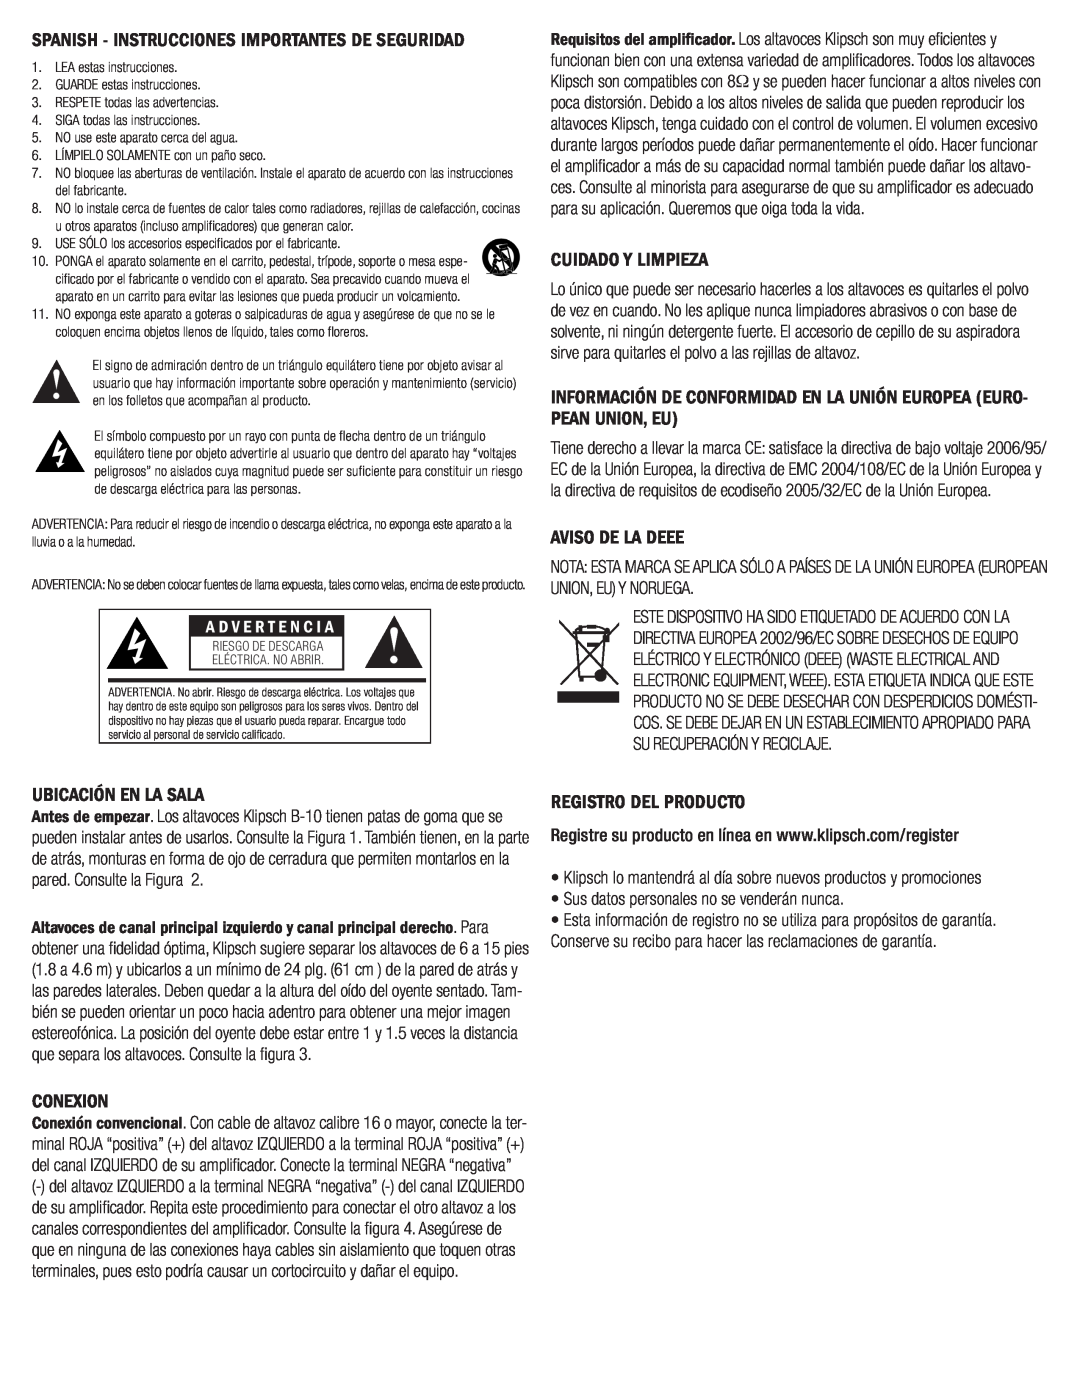 Klipsch B-10 owner manual Cuidado Y Limpieza, Aviso De La Deee, Ubicación En La Sala, Conexion, Registro Del Producto 